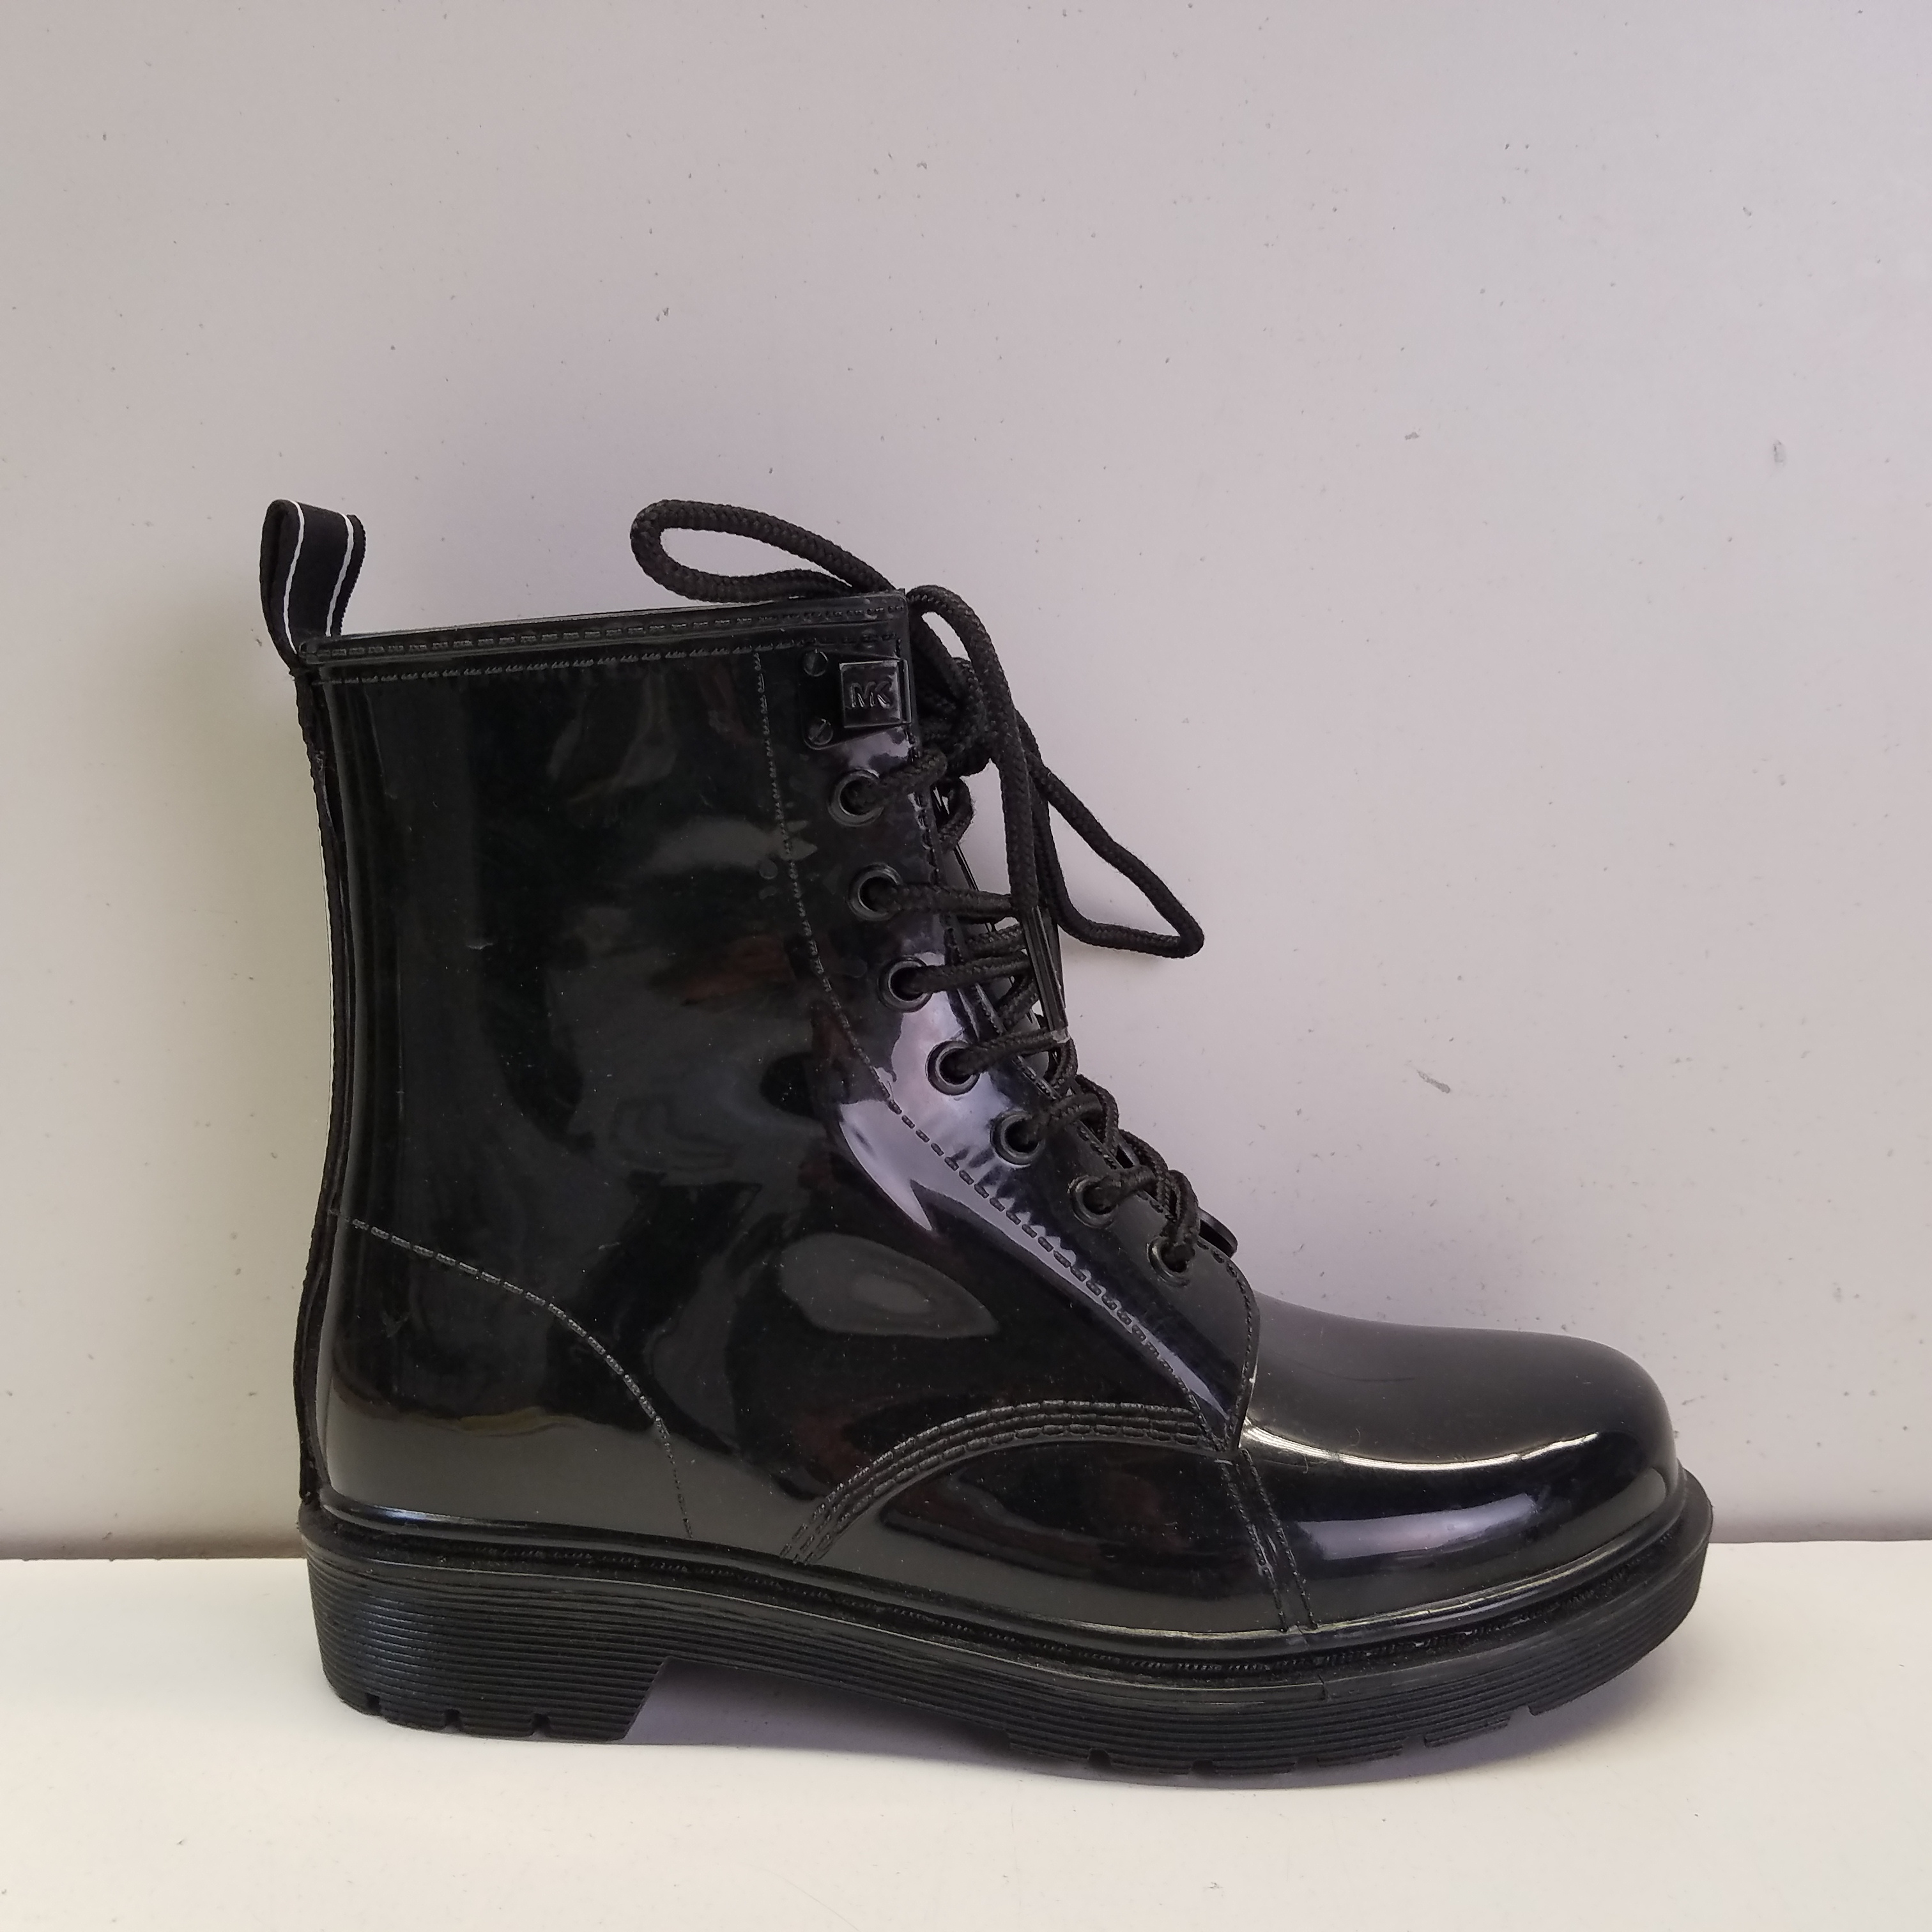 Buy the Michael Kors Tavie Rubber Black Rain Lace Up Boots Women's Size ...